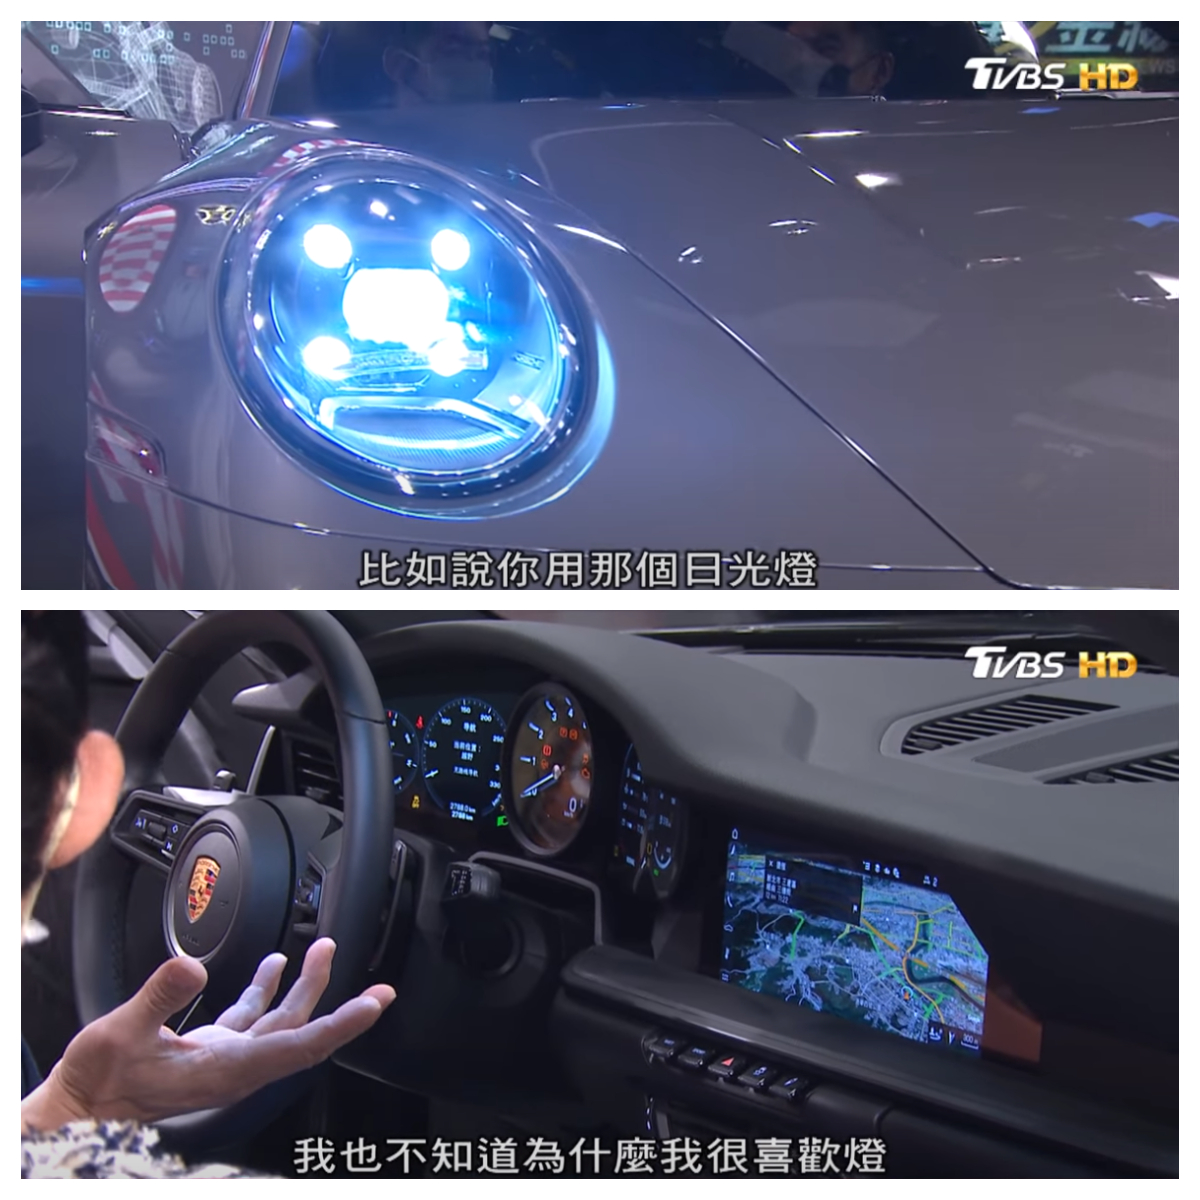 吳大維對於911車內的燈光設計相當喜愛。(圖片來源/ 地球黃金線)